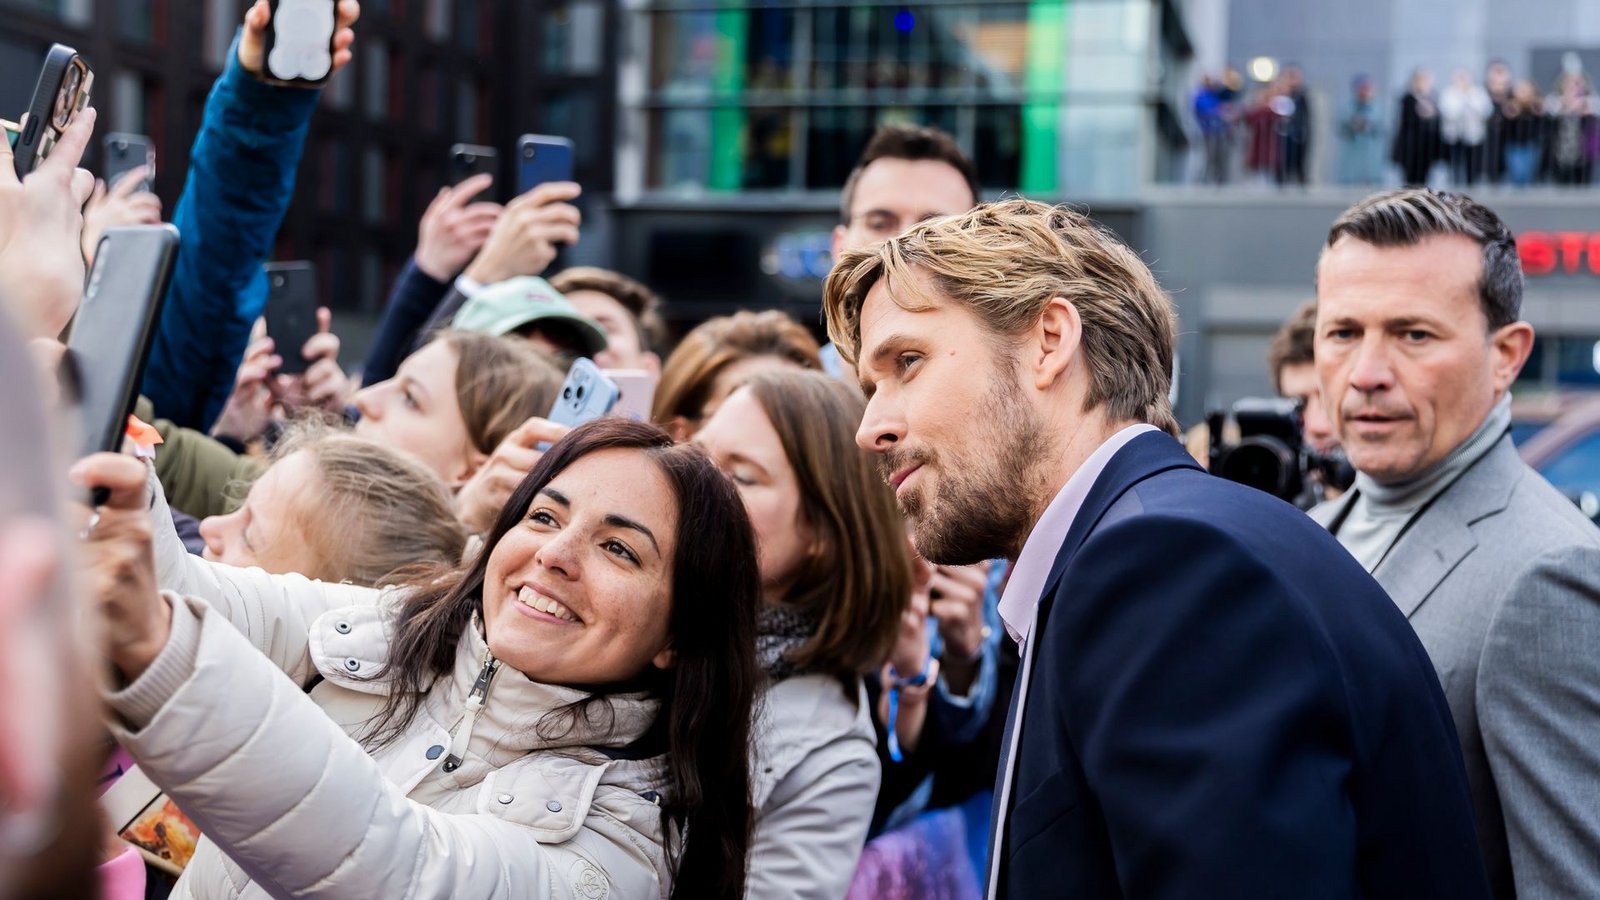 Und auch Ryan Gosling posiert für Selfies mit wartenden Fans.Foto: Christoph Soeder/dpa